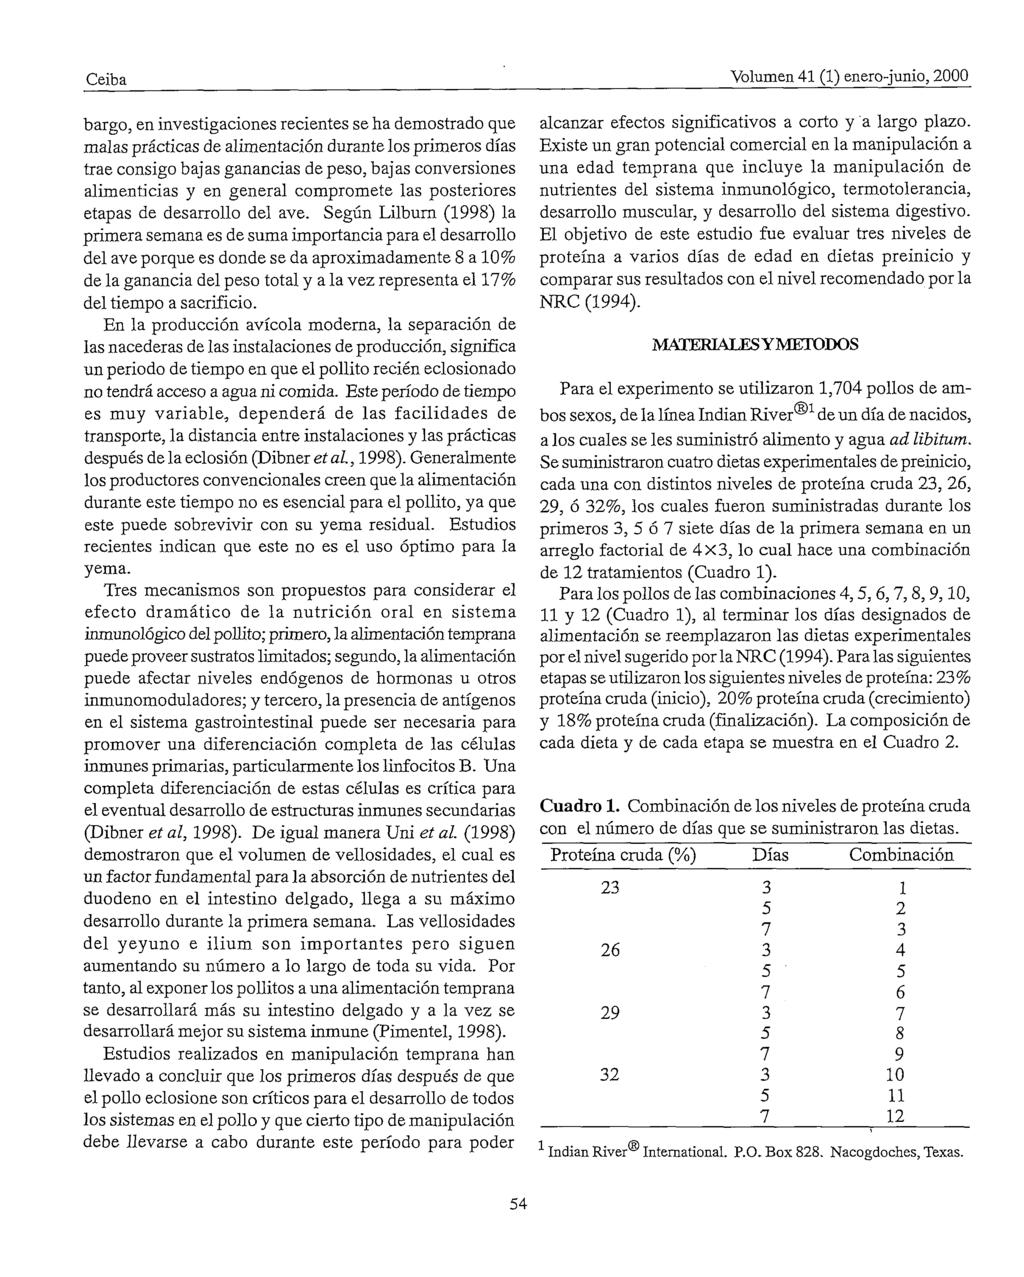 Ceiba Volumen 41 (1) enero-junio, 2000 bargo, en investigaciones recientes se ha demostrado que malas prácticas de alimentación durante los primeros días trae consigo bajas ganancias de peso, bajas